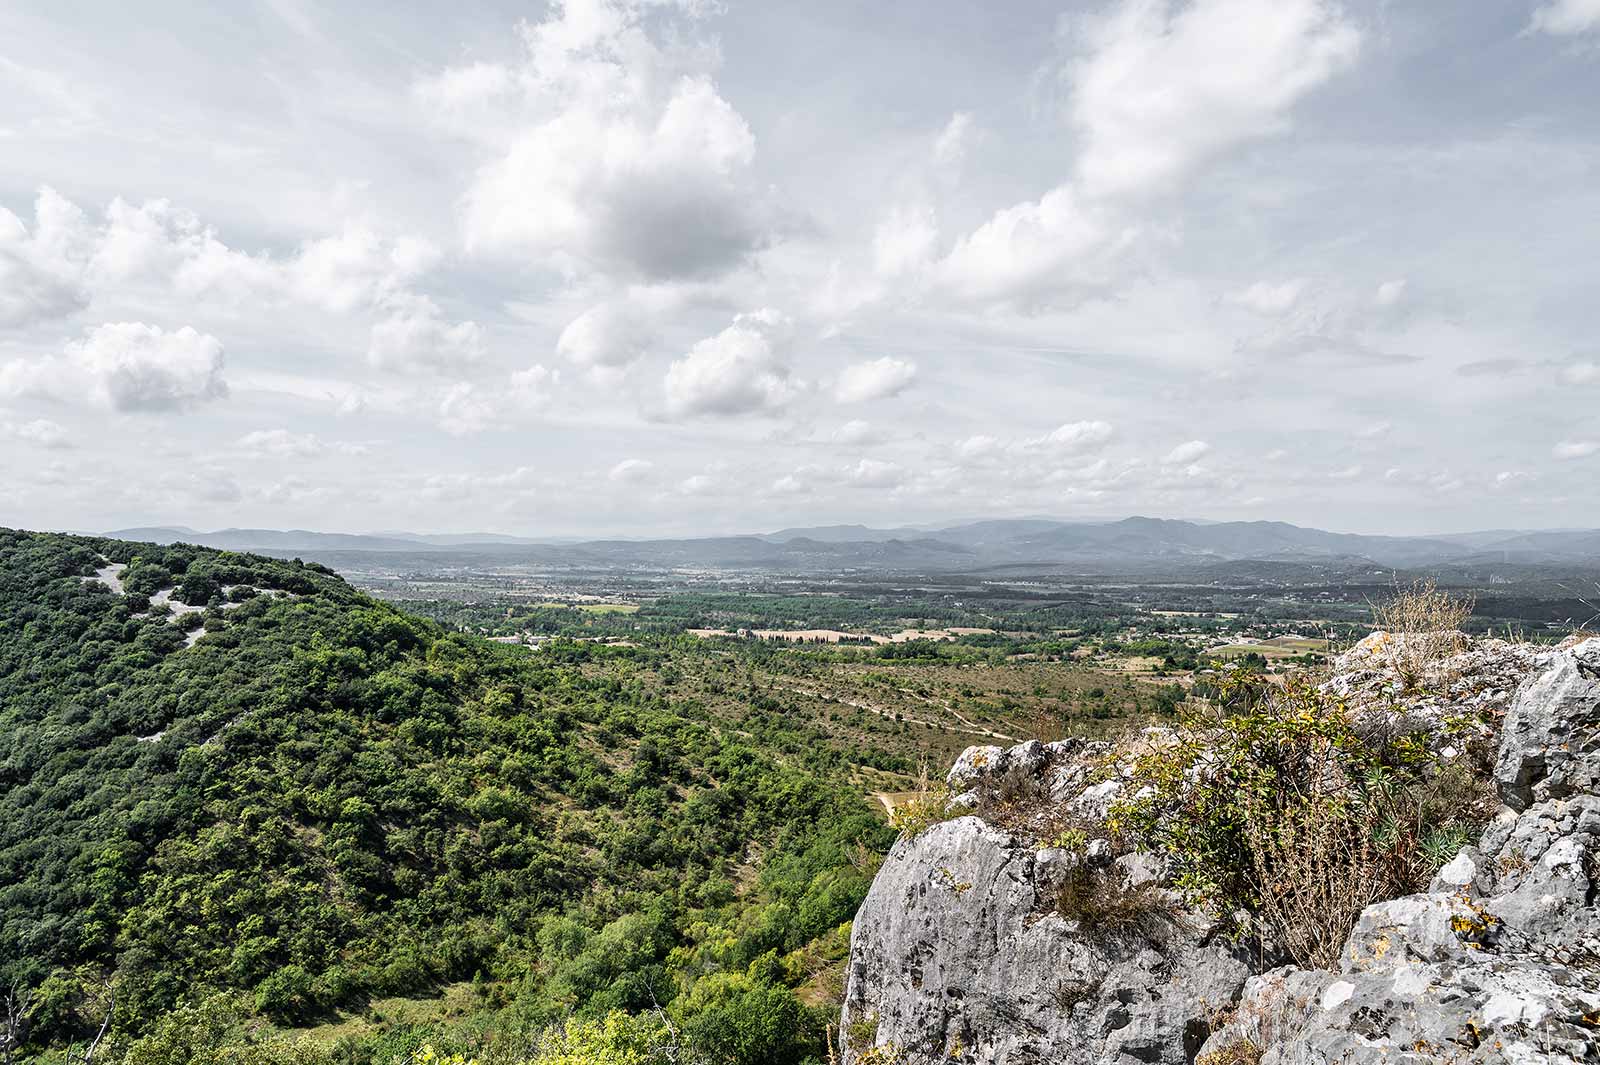 Am höchsten Punkt der Geisterstadt Le Chastelas findet man einen Fels, von dem aus man eine wunderbare Aussicht über die Landschaft der Ardèche hat.